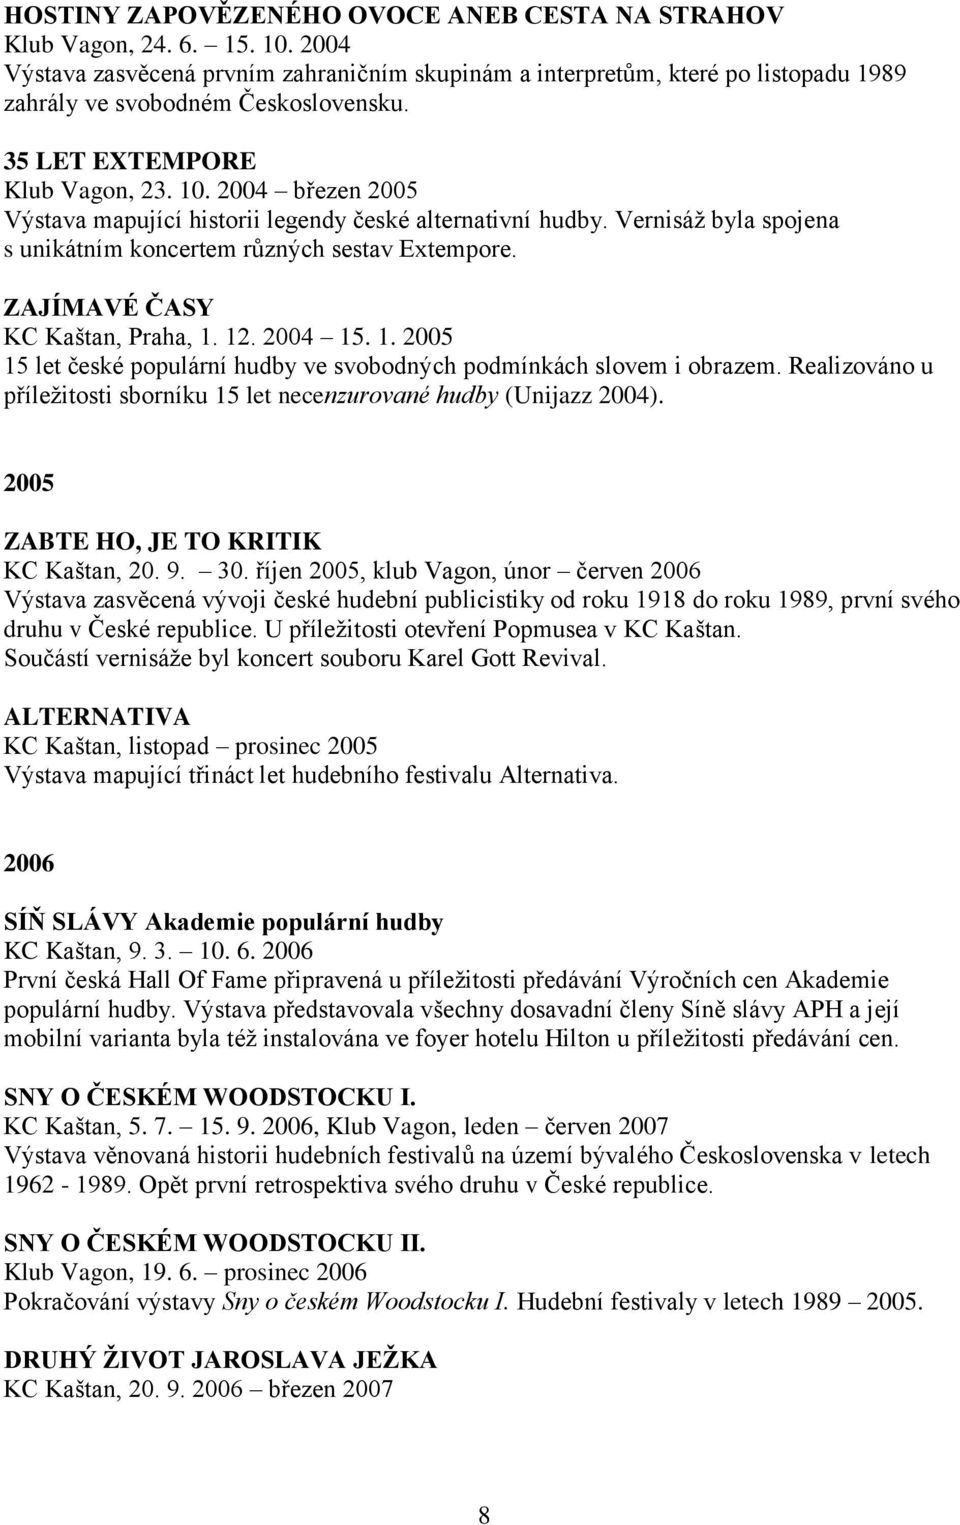 2004 březen 2005 Výstava mapující historii legendy české alternativní hudby. Vernisáž byla spojena s unikátním koncertem různých sestav Extempore. ZAJÍMAVÉ ČASY KC Kaštan, Praha, 1.